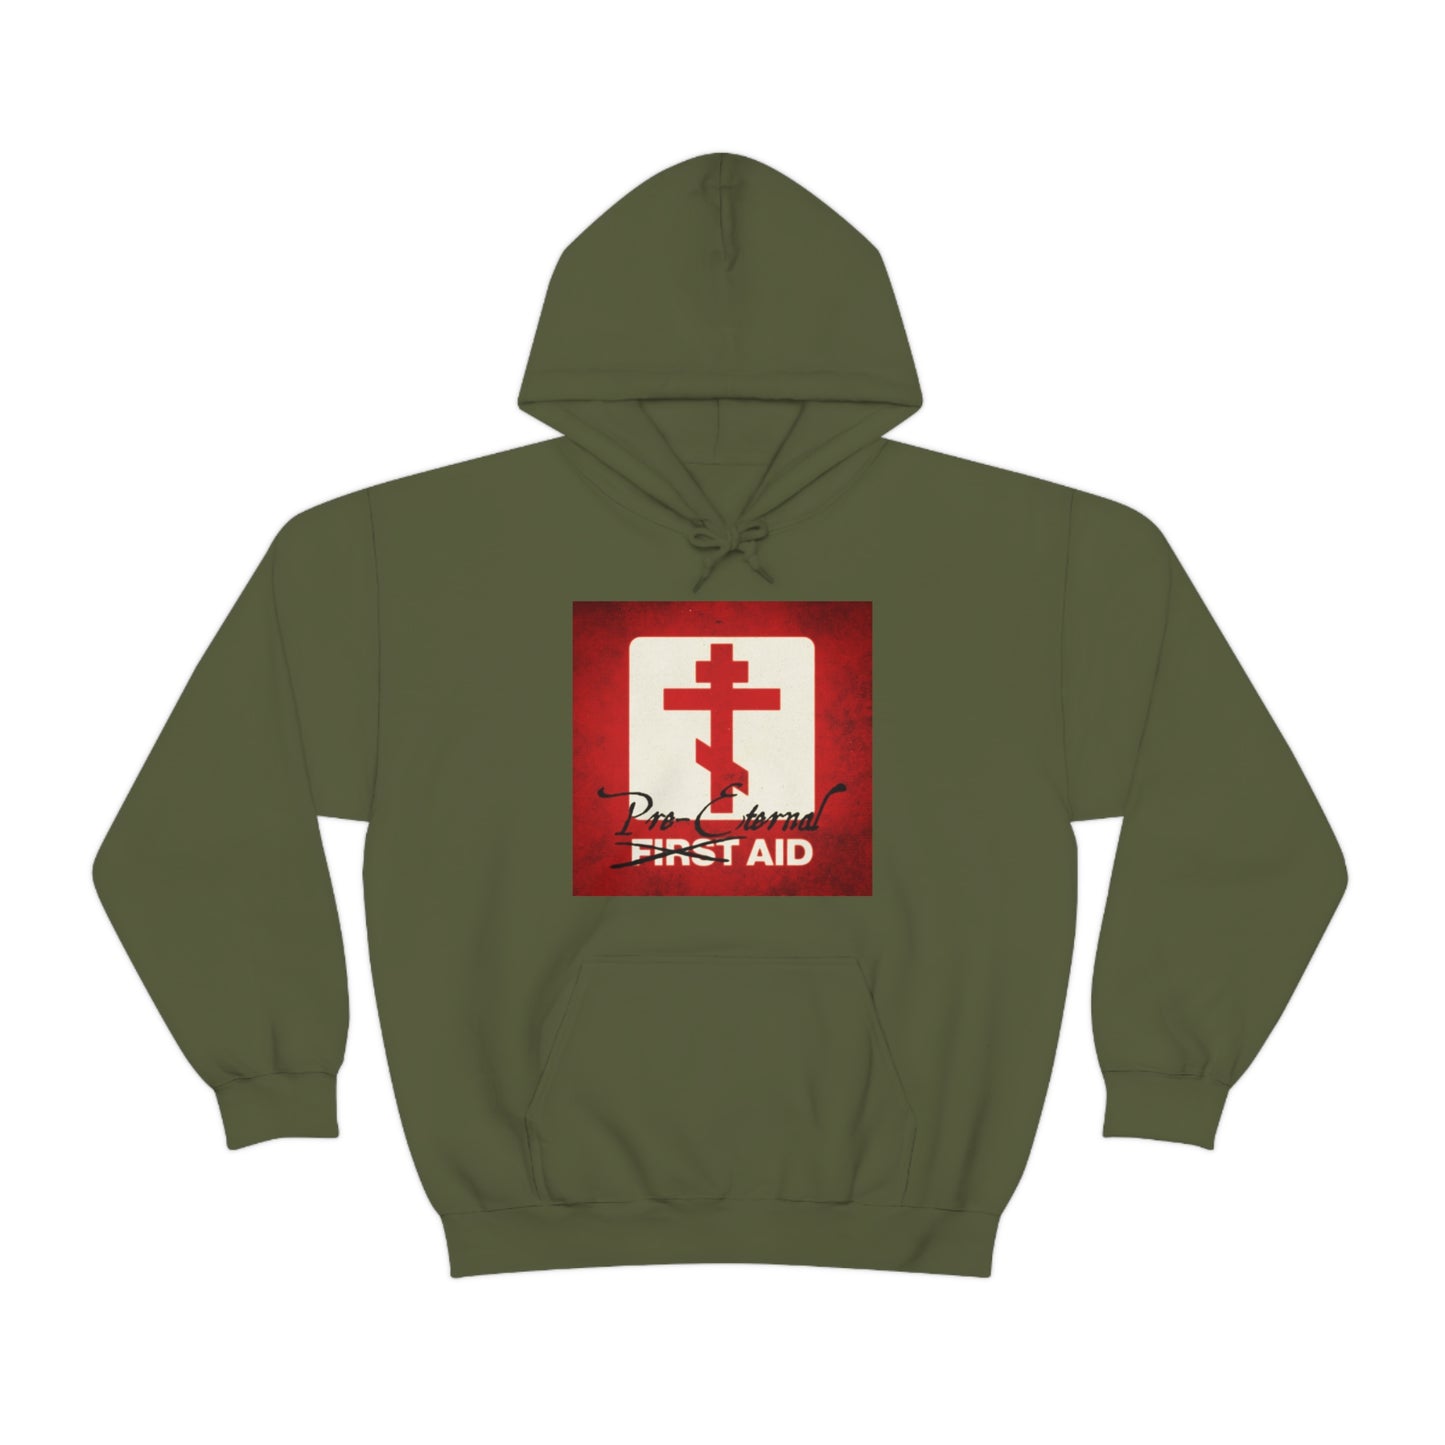 Pre-Eternal Aid No. 1 | Orthodox Christian Hoodie / Hooded Sweatshirt